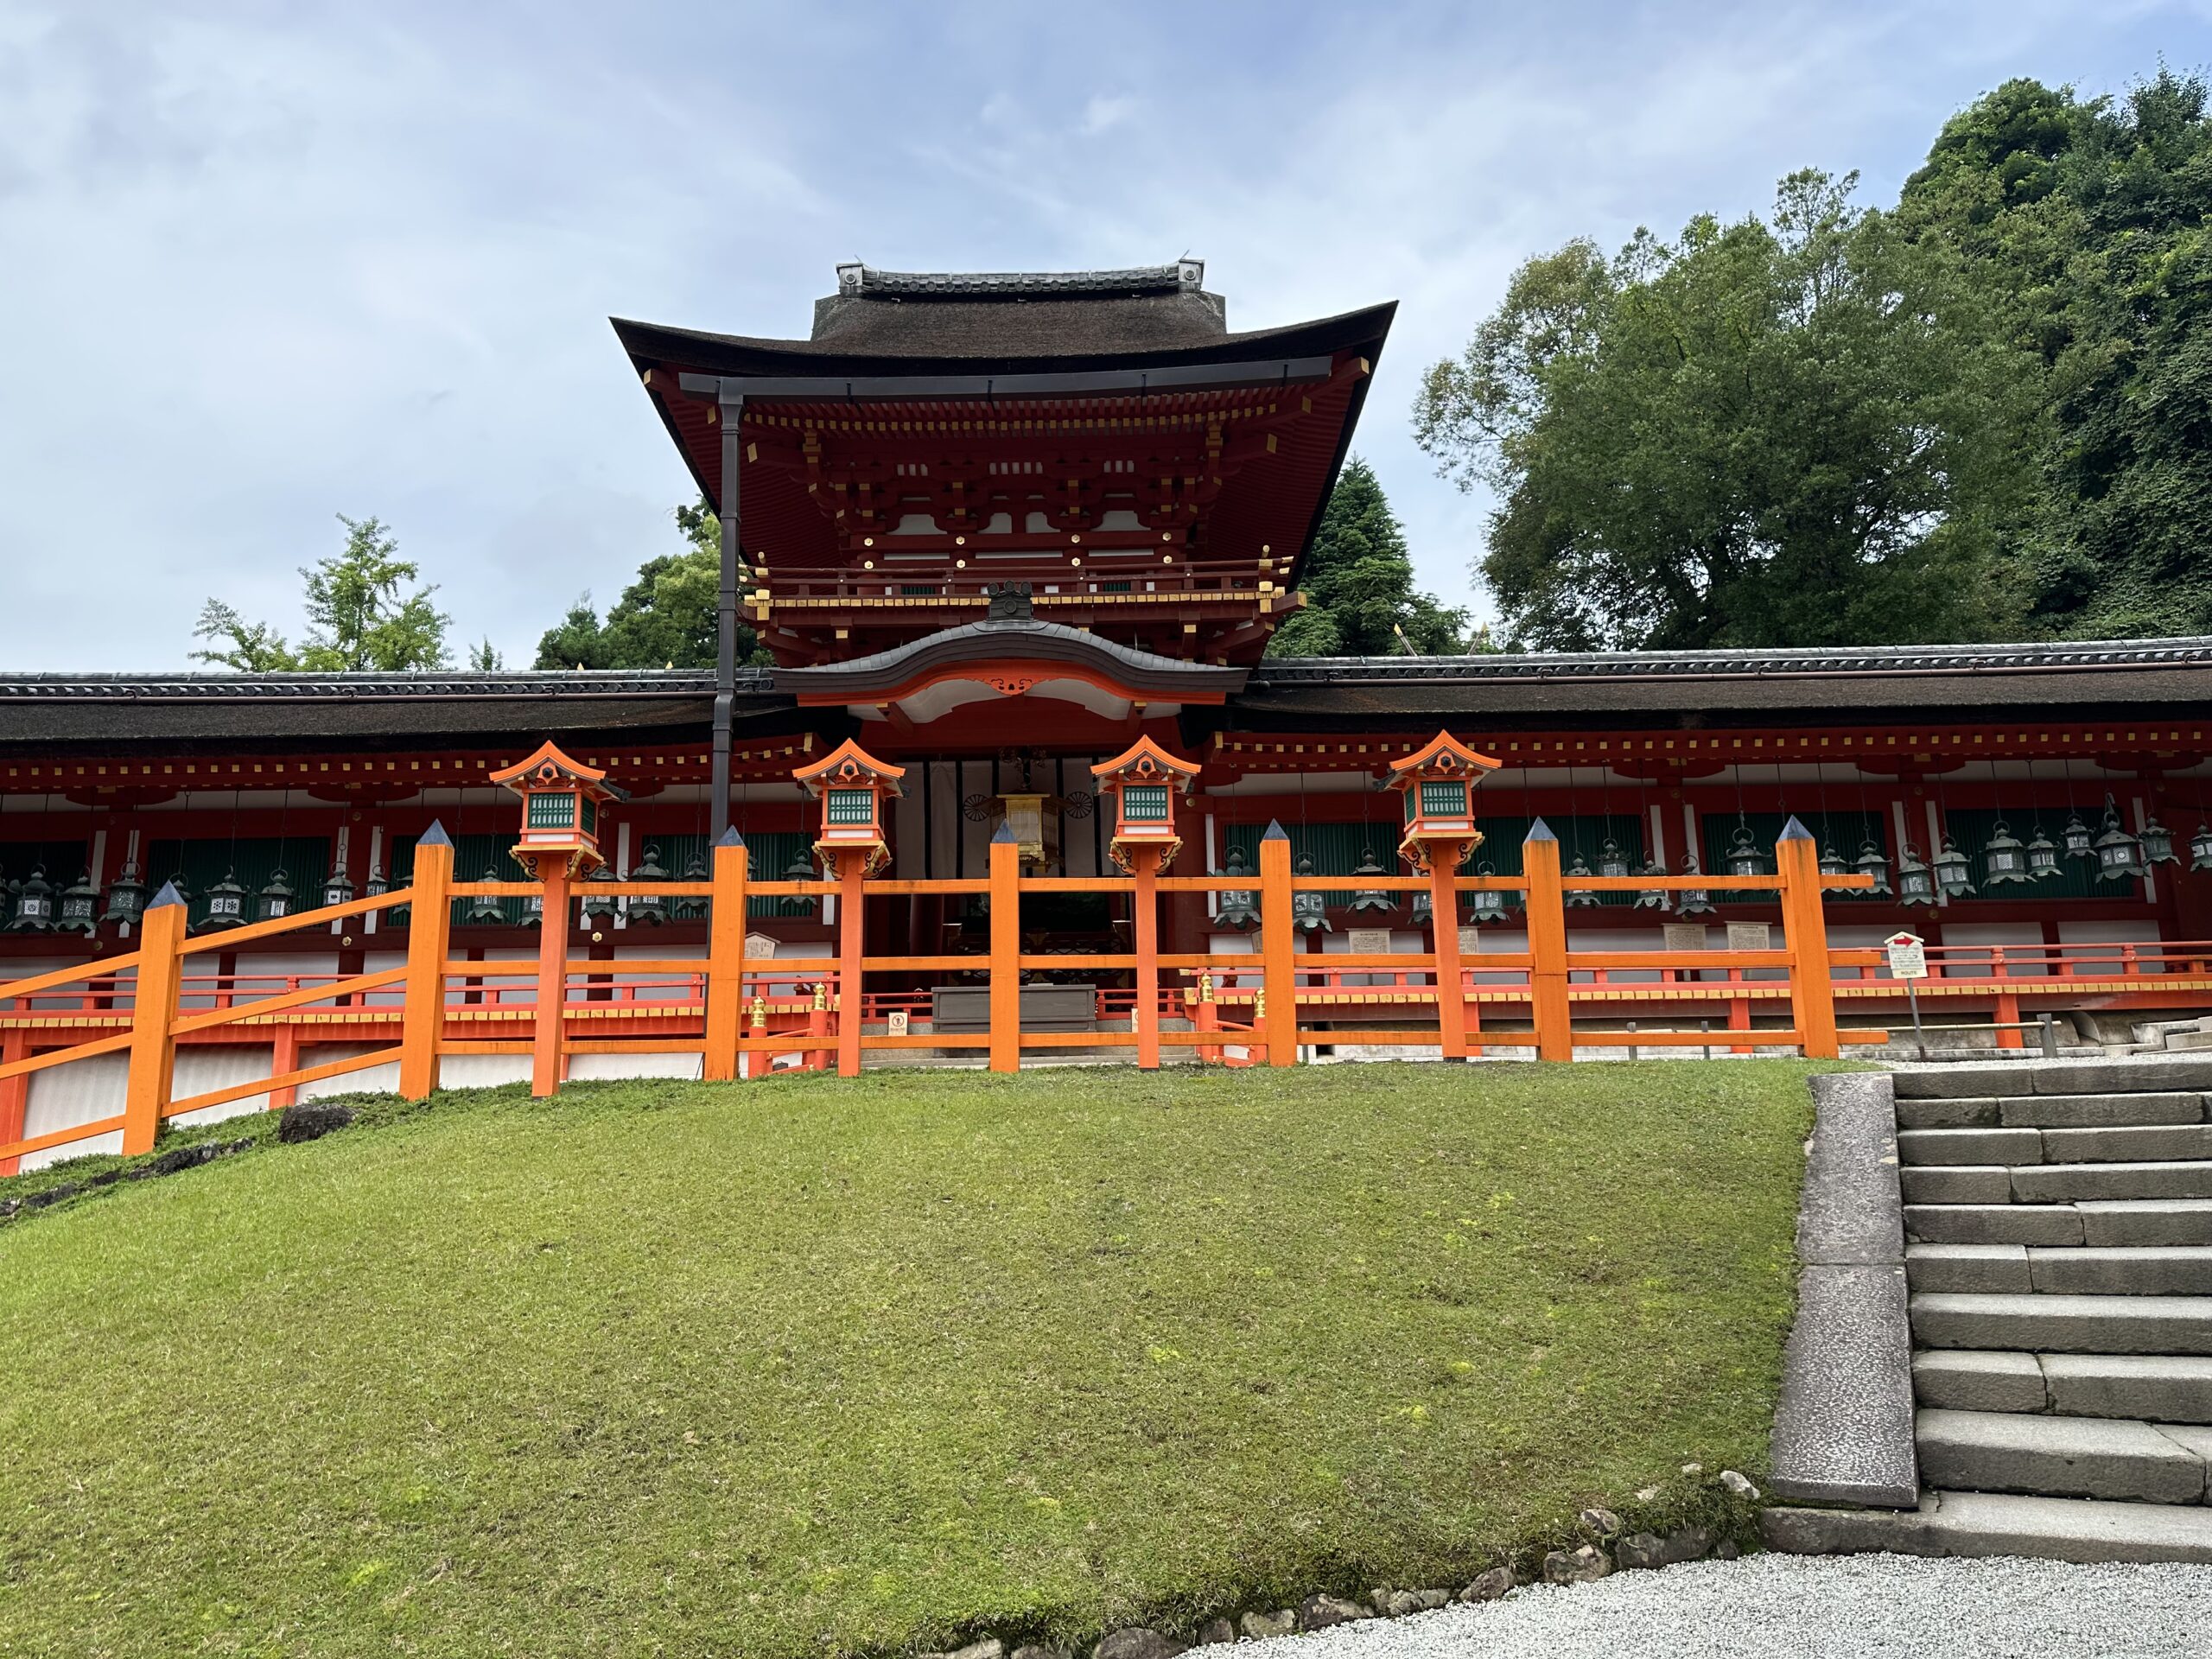 Middle gate and hall at Kasuga Taisha shrine.